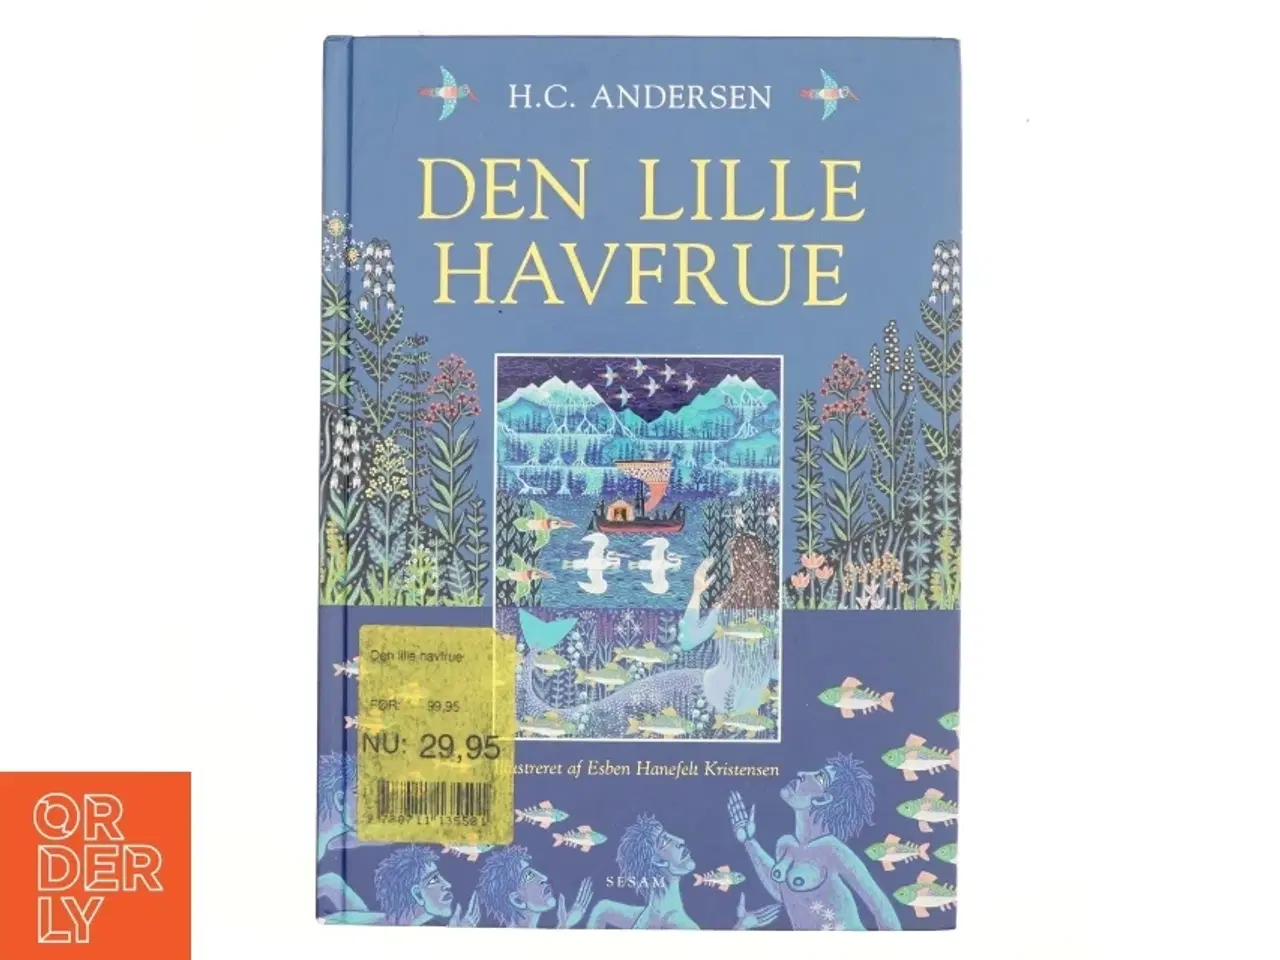 Billede 1 - Den lille havfrue (Ill. Esben Hanefelt Kristensen) af H. C. Andersen (f. 1805) (Bog)